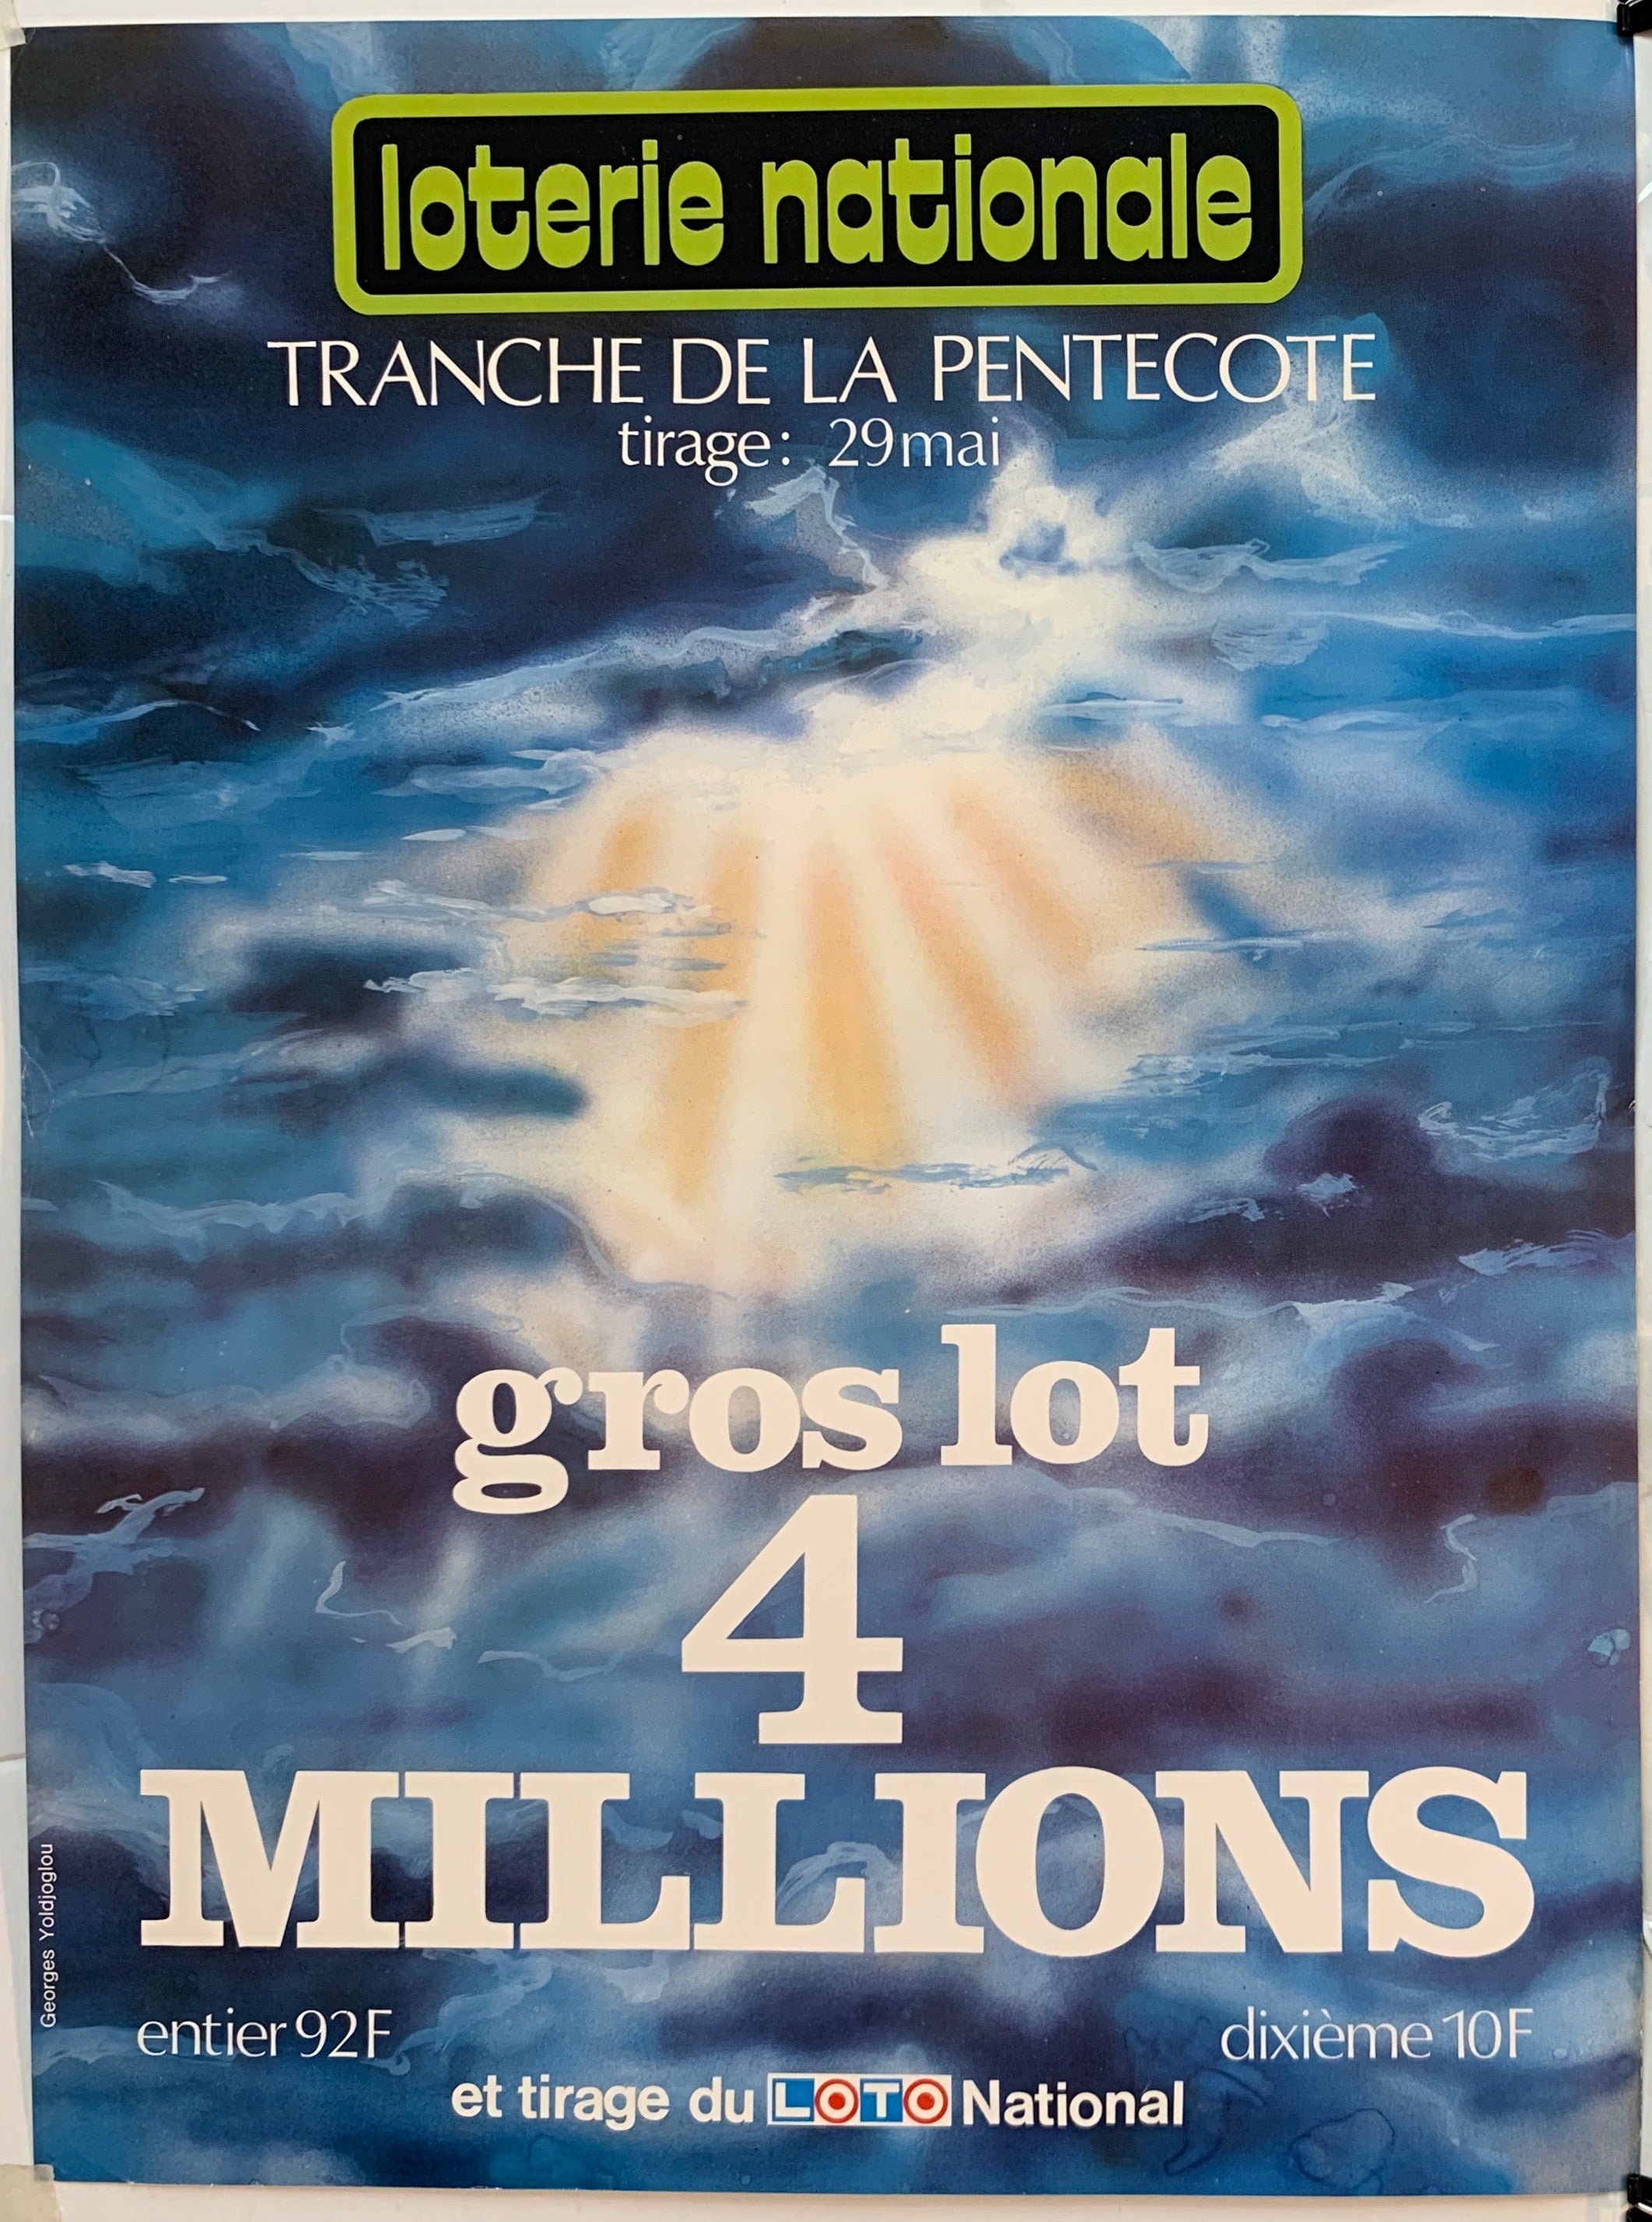 Loterie Nationale - "Tranche de la Pentecote"